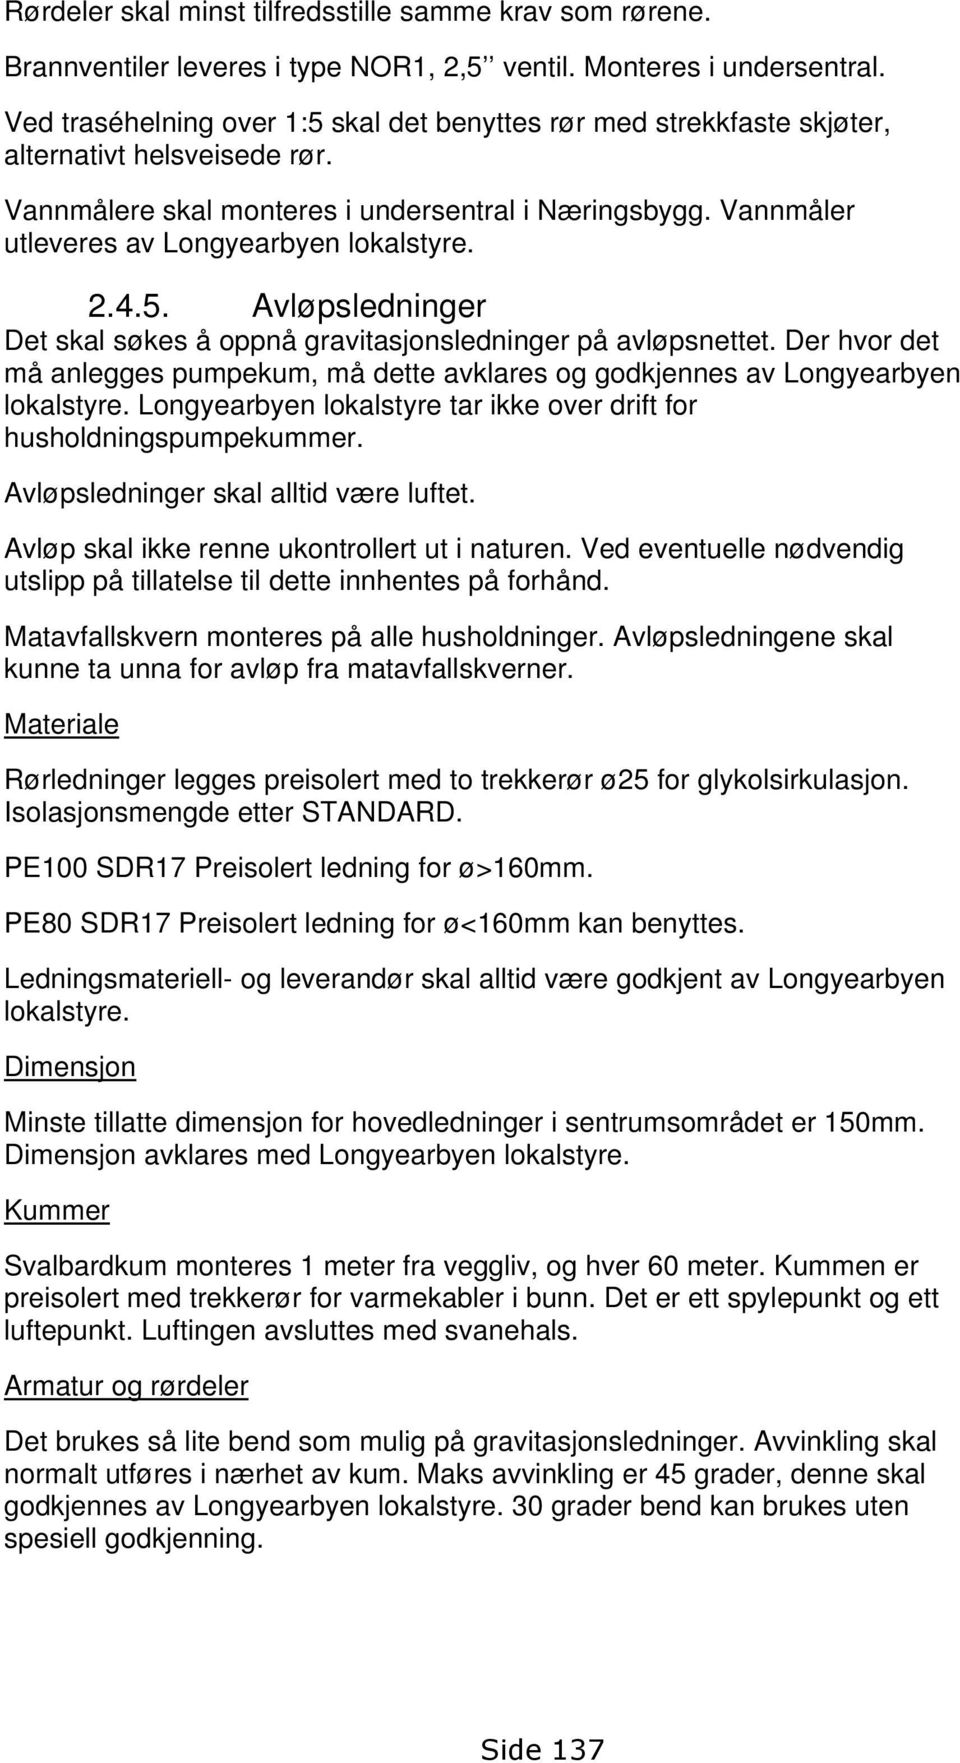 Vannmåler utleveres av Longyearbyen lokalstyre. 2.4.5. Avløpsledninger Det skal søkes å oppnå gravitasjonsledninger på avløpsnettet.